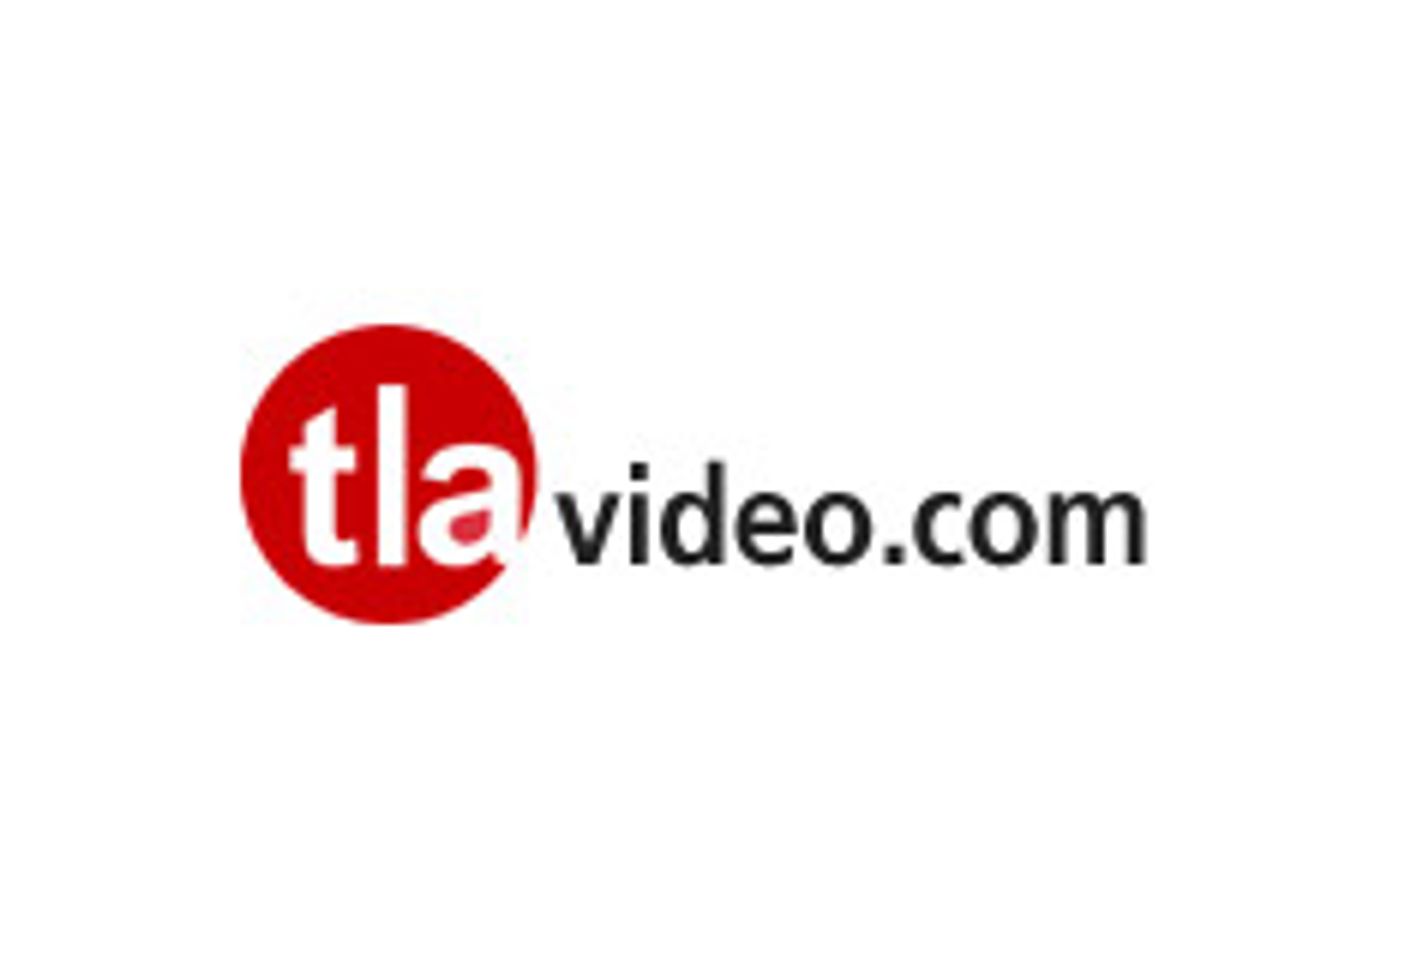 Company Profile: TLA Video